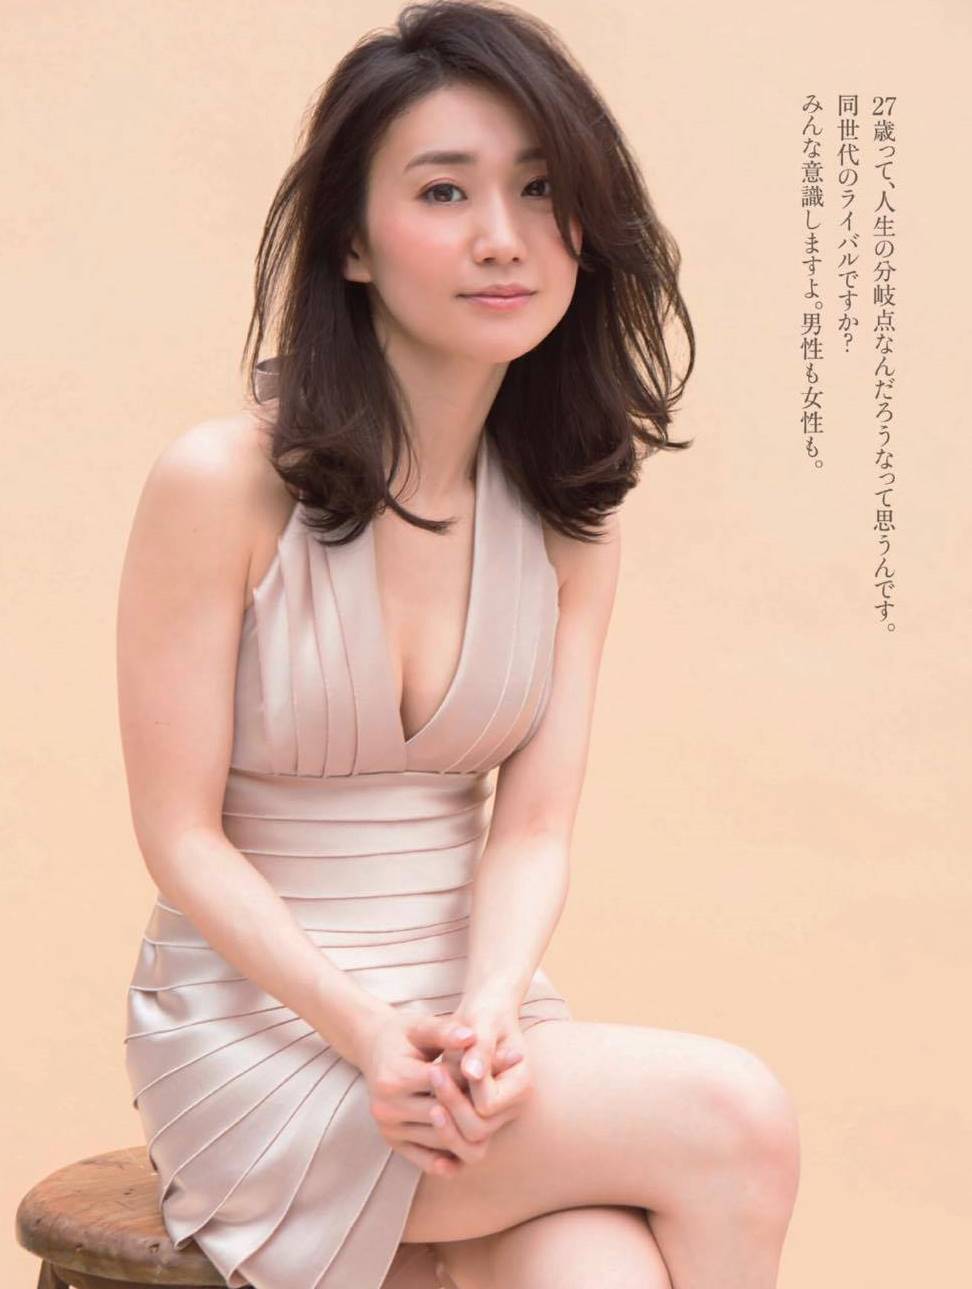 大島優子の身長 体重 現在のスタイル ダイエット方法も総まとめ 画像大量 Aikru アイクル かわいい女の子の情報まとめサイト